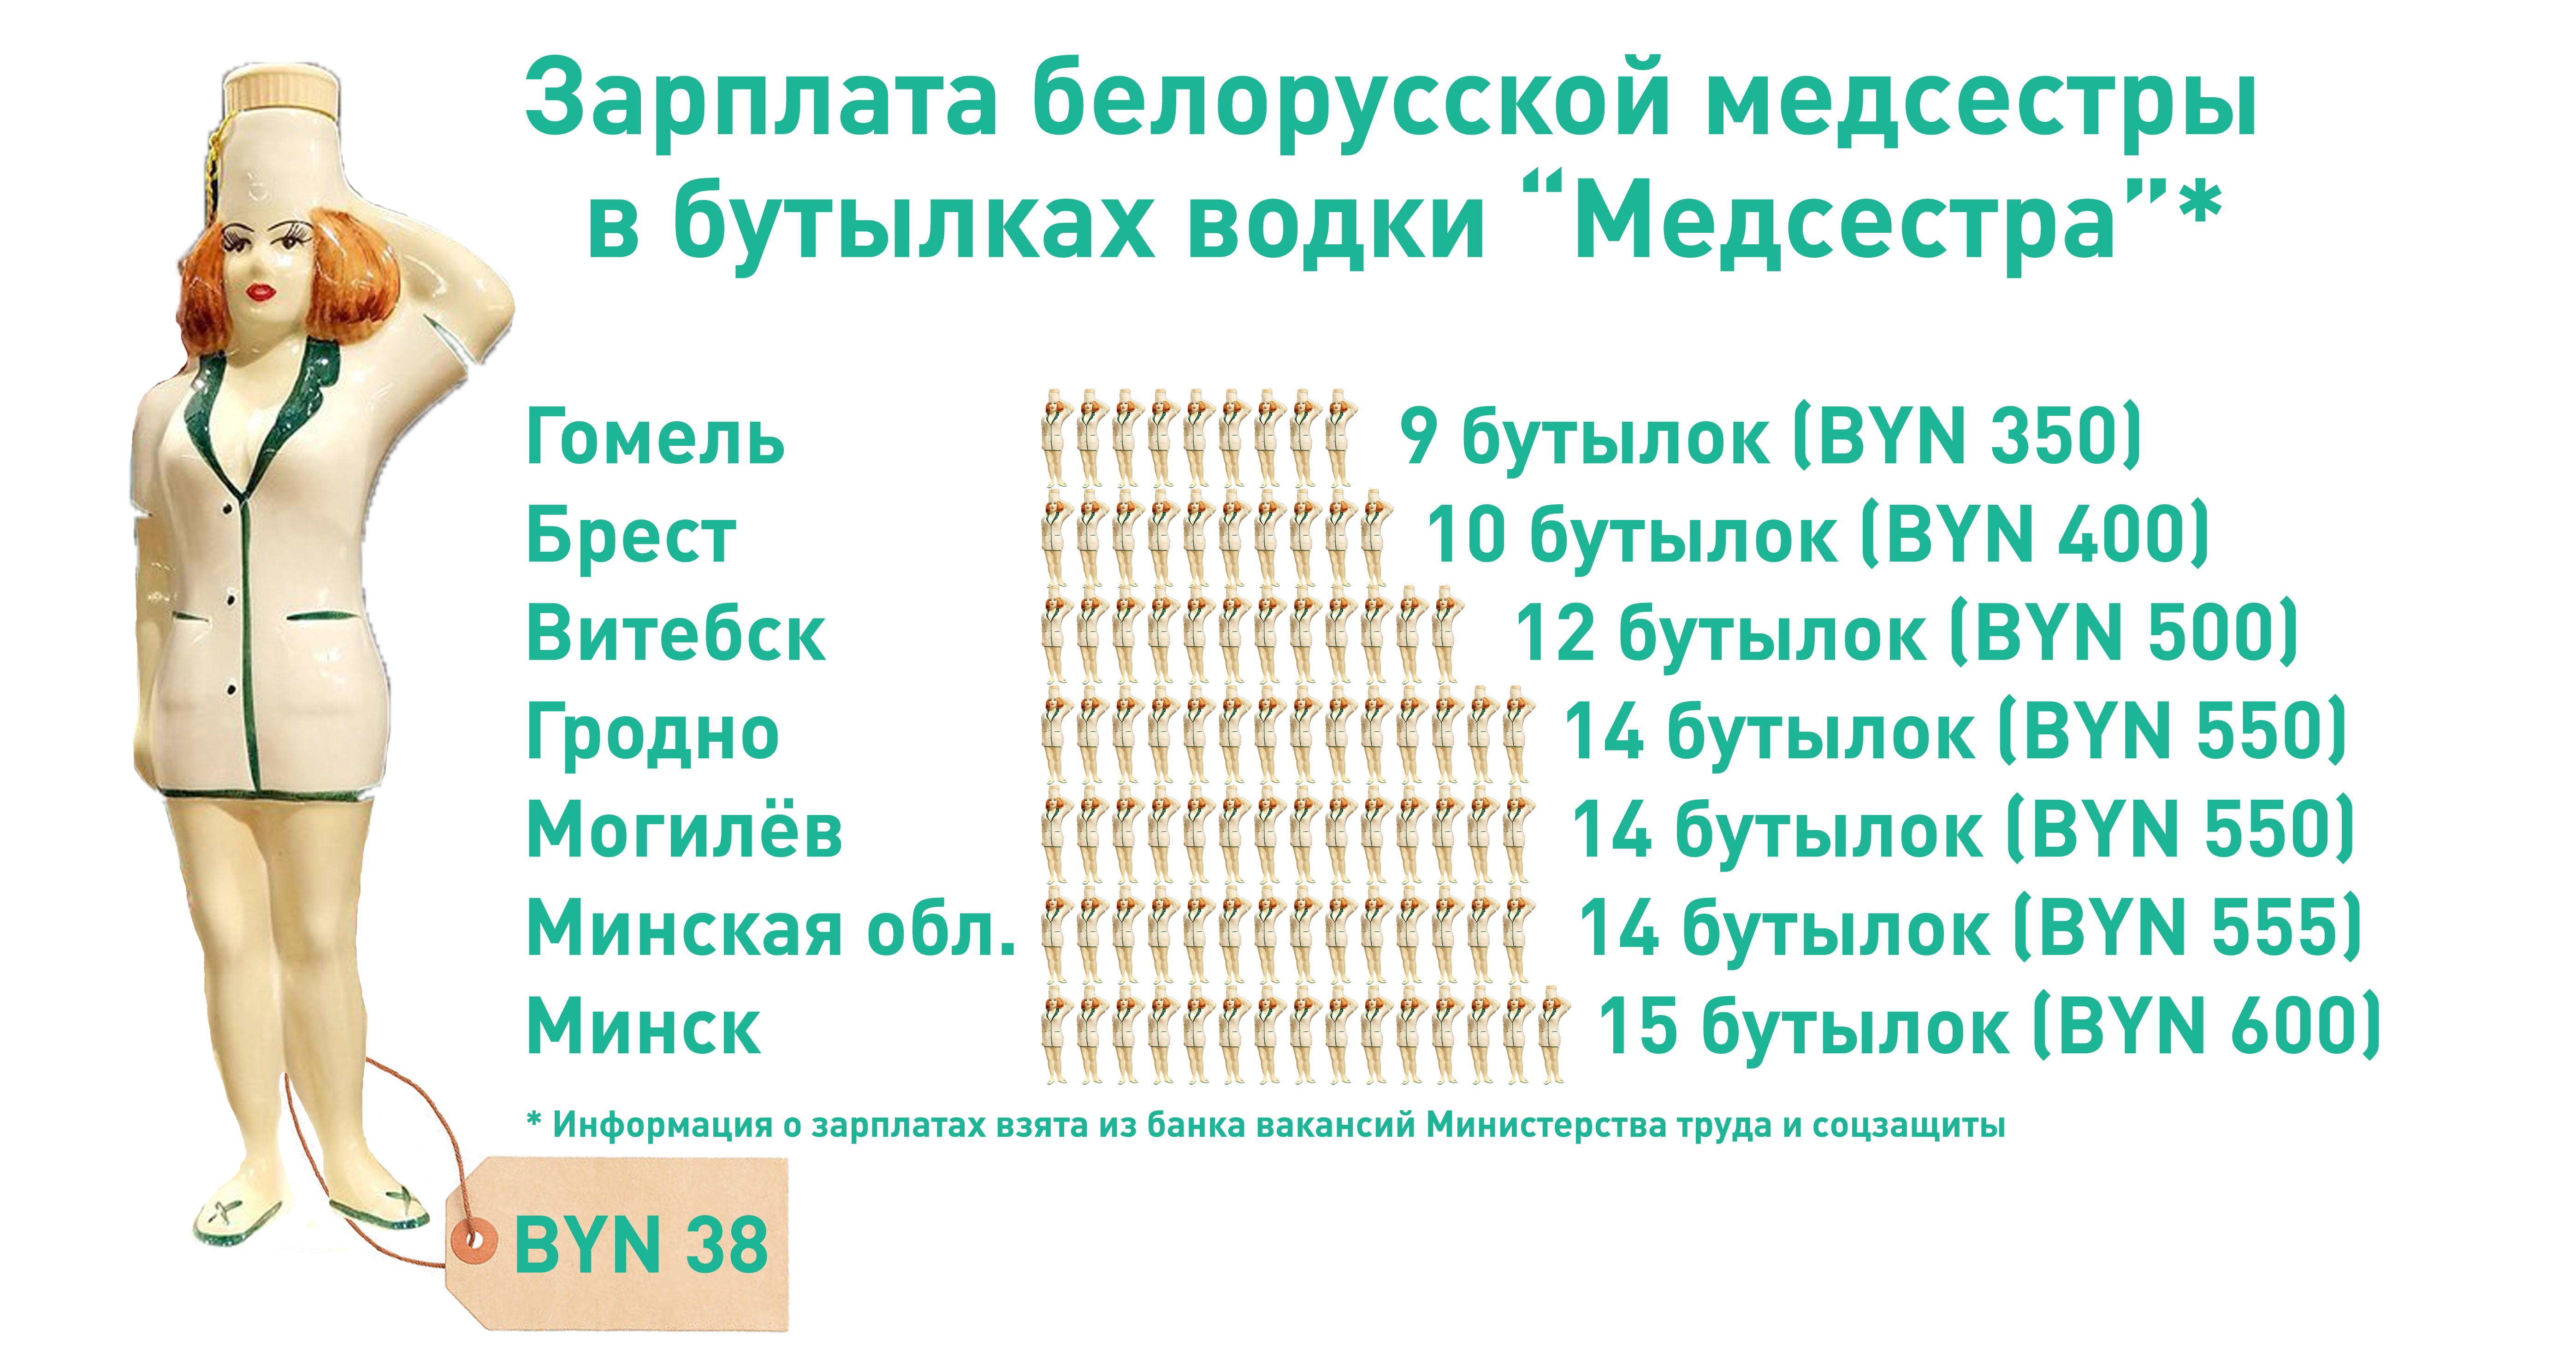 В Гомеле — 9, в Минске — 15: зарплата белорусской медсестры в “Медсёстрах” 